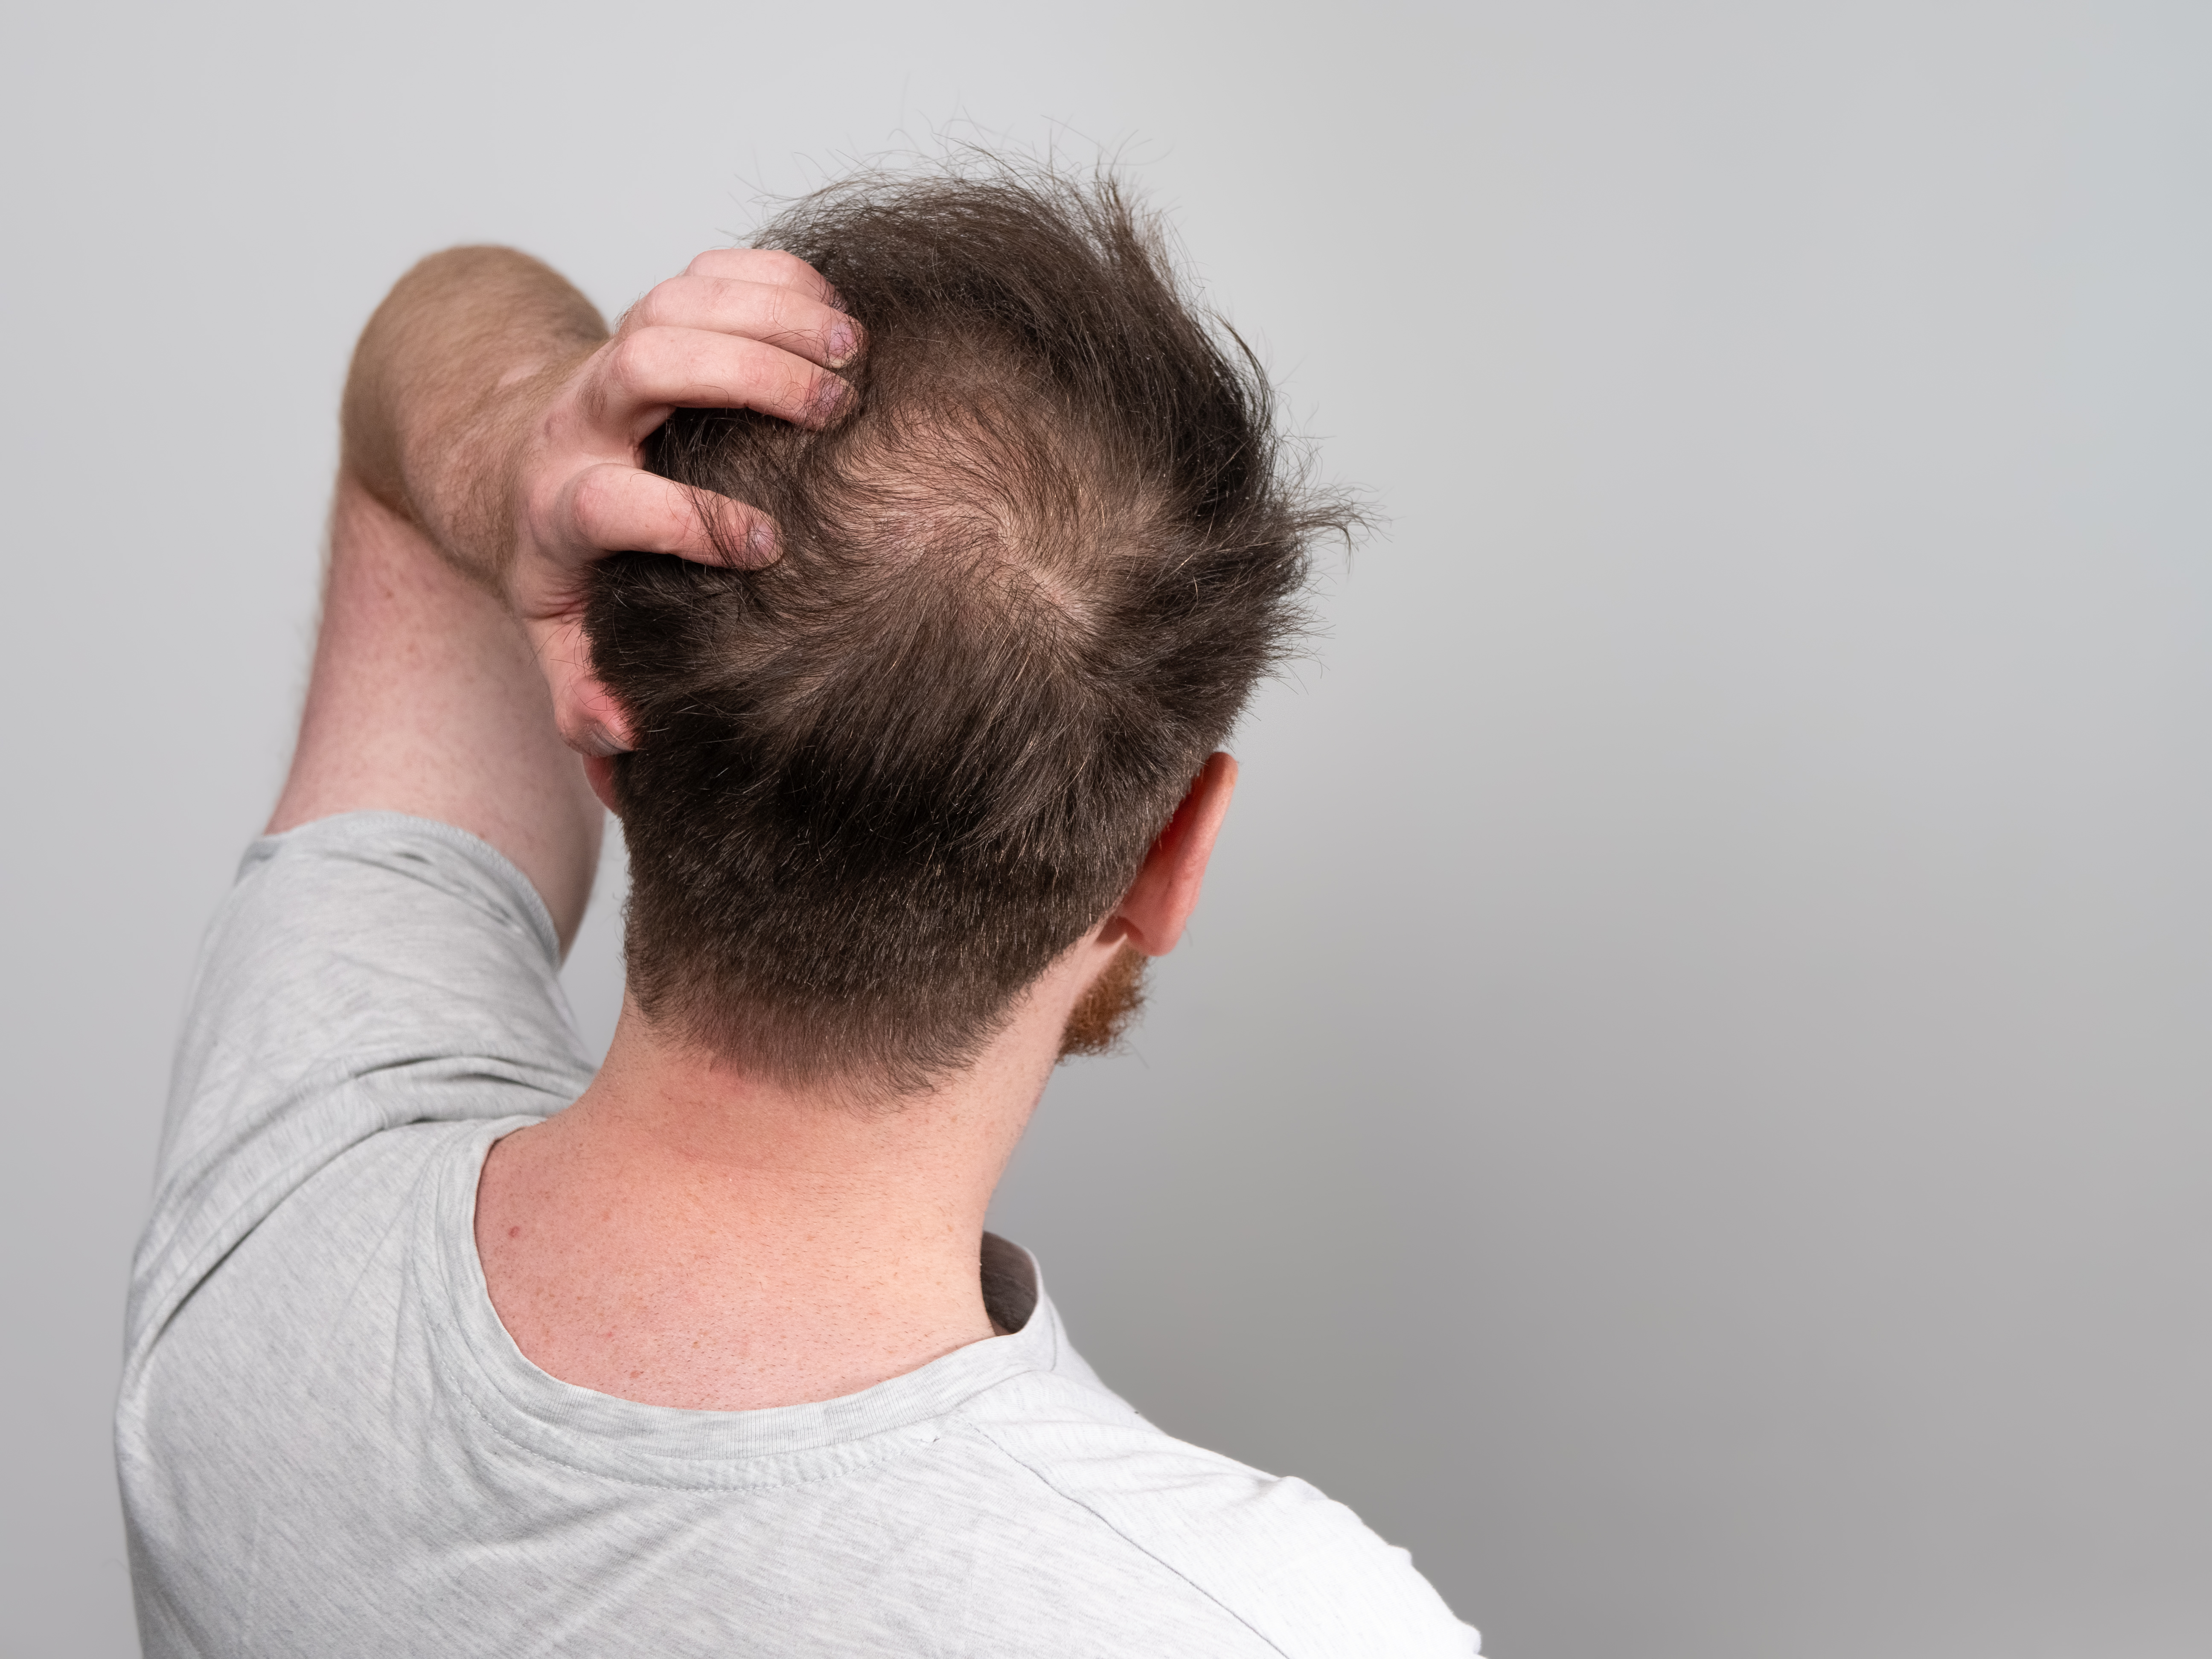 Hombres: esto es lo que deben hacer para estimular el crecimiento cabello